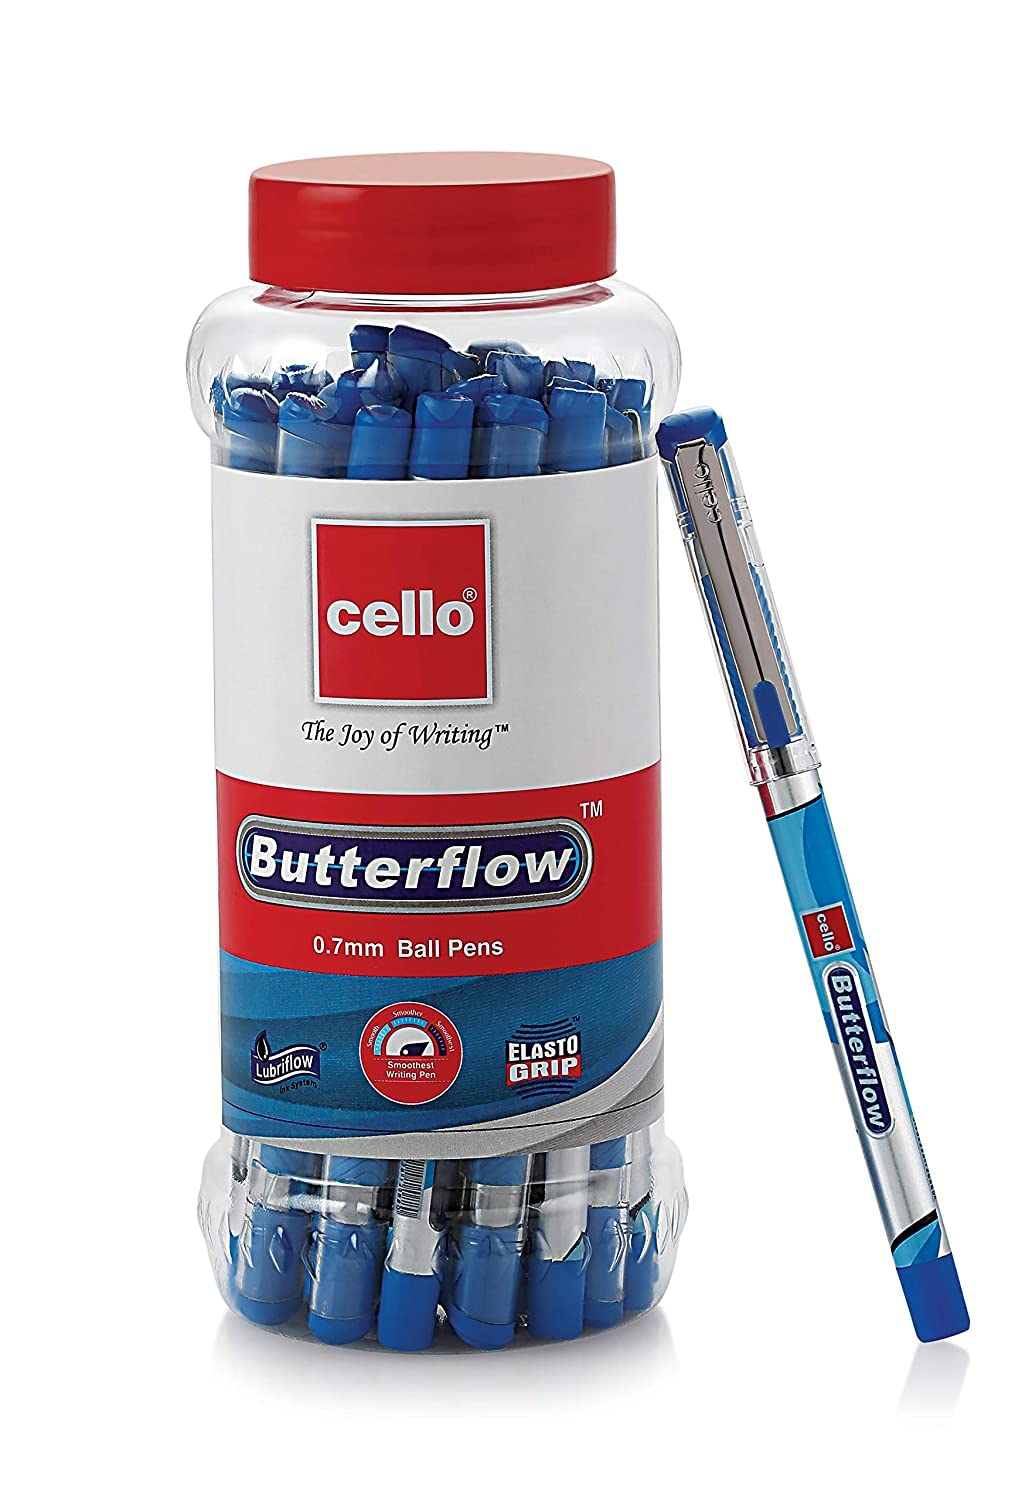 Cello Butterflow Ball Pen | Blue Ball Pens | Jar of 25 Units